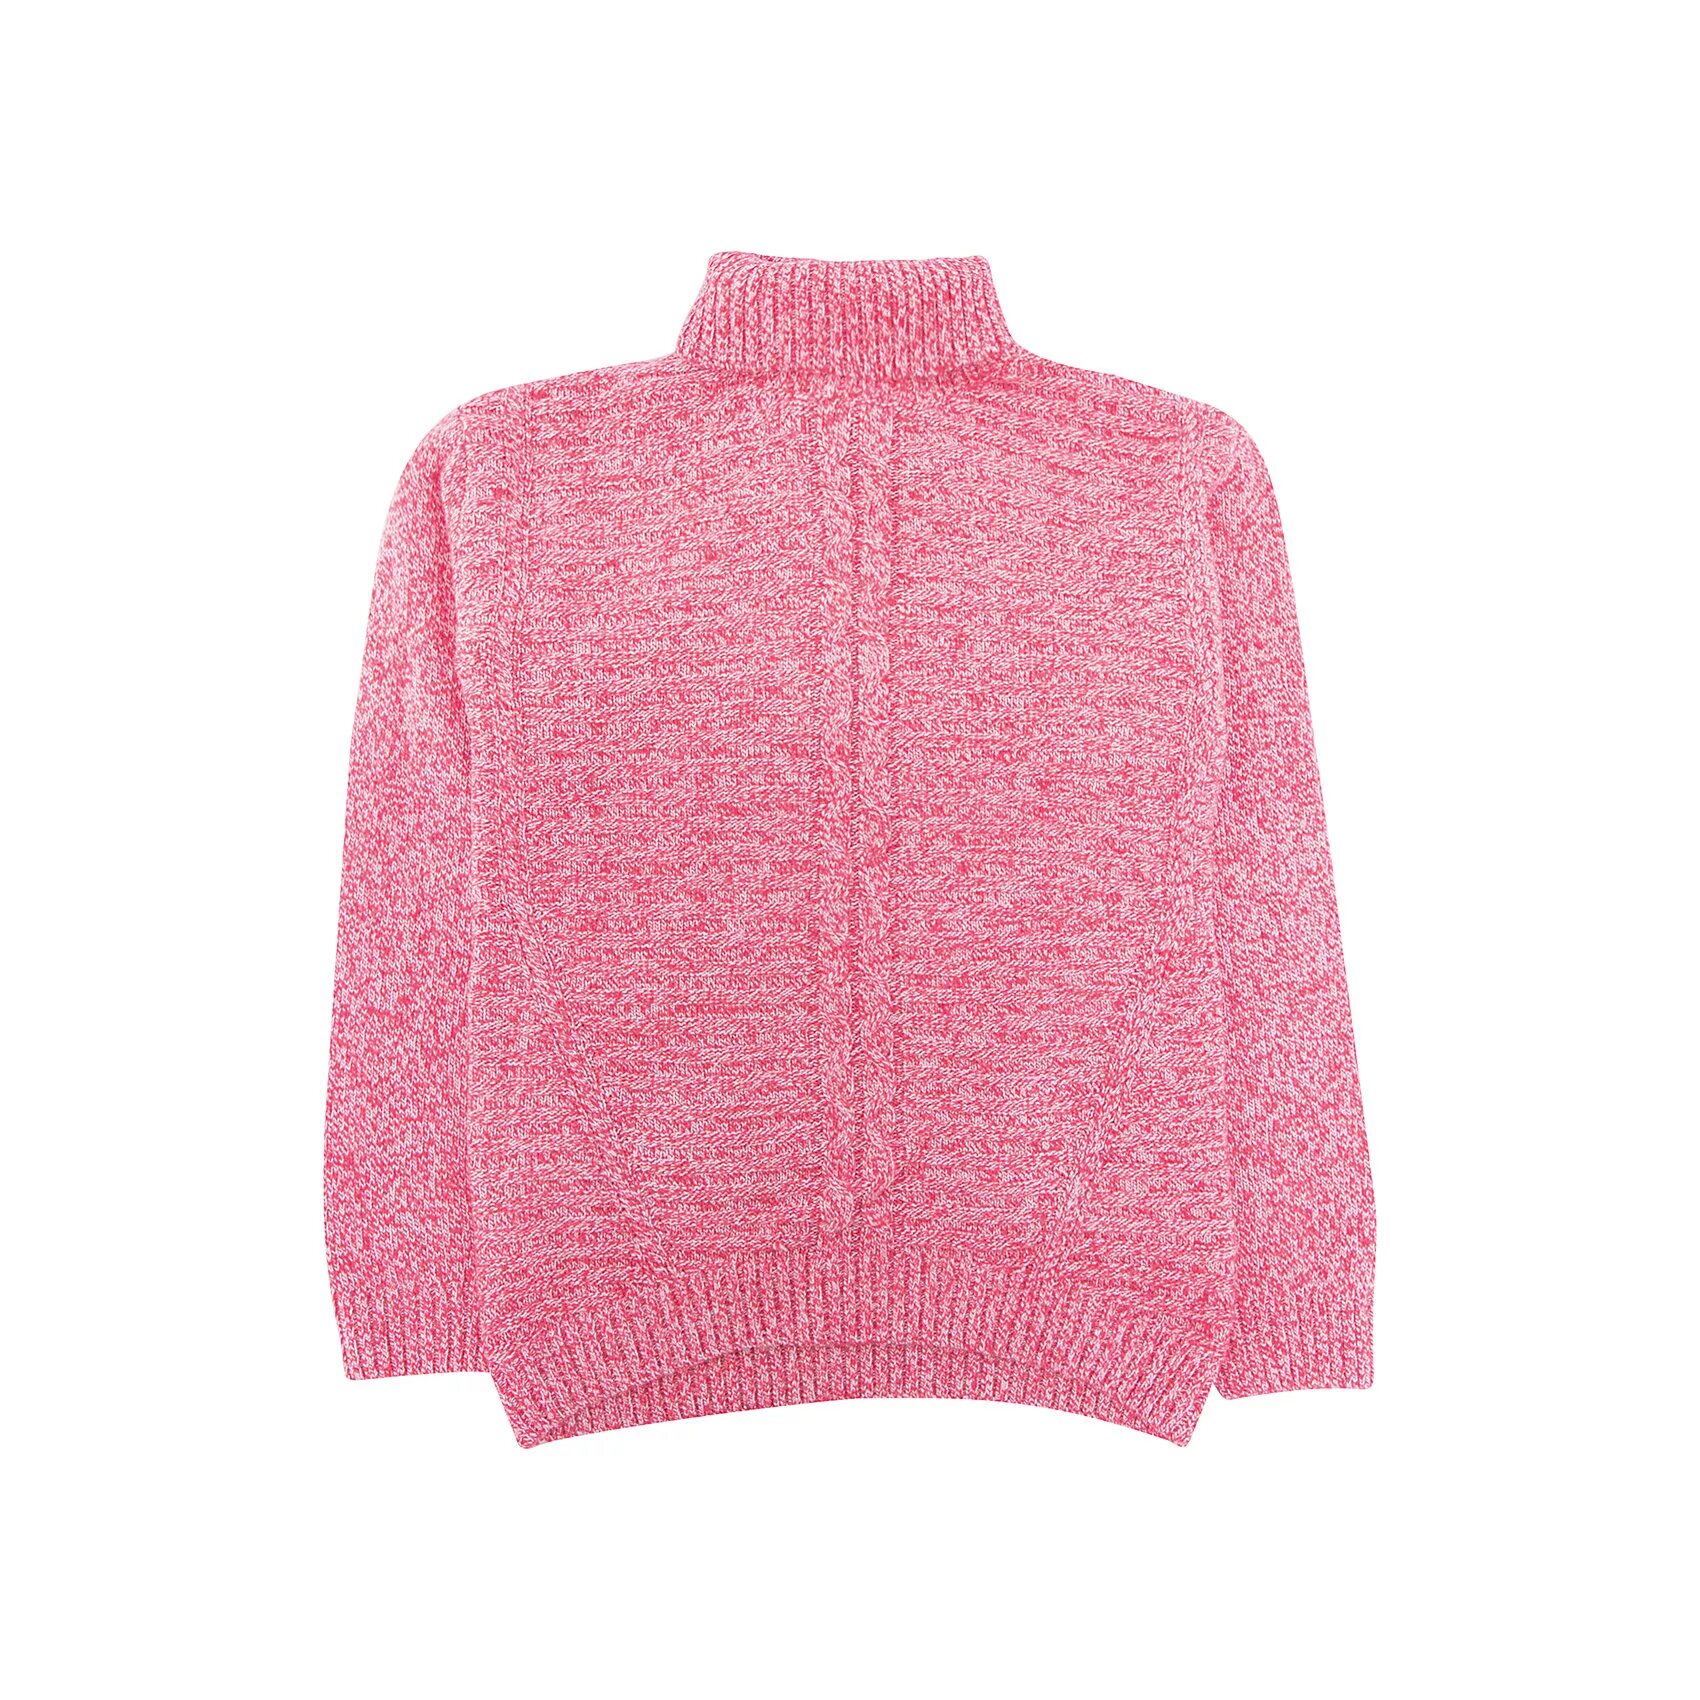 Розовый свитер Sela. Свитер для девочки розовый. Джемпер для девочки розовый. Розовый свитер на белом фоне. Песни розовый свитер